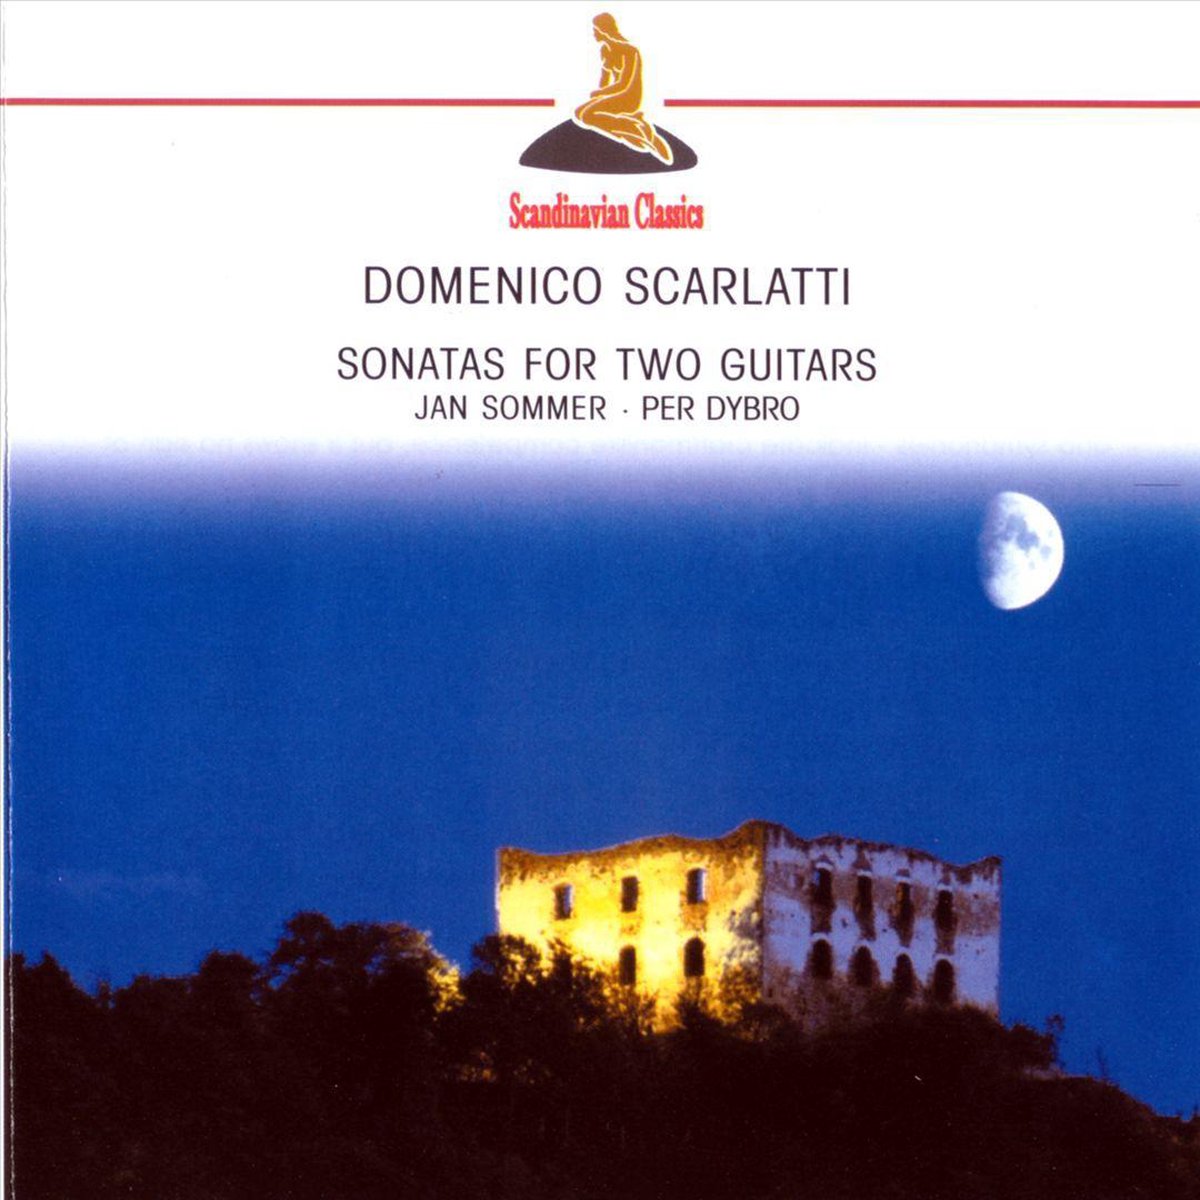 Scarlatti: Sonatas for Two Guitars | Domenico Scarlatti, Jan Sommer, Per Dybro